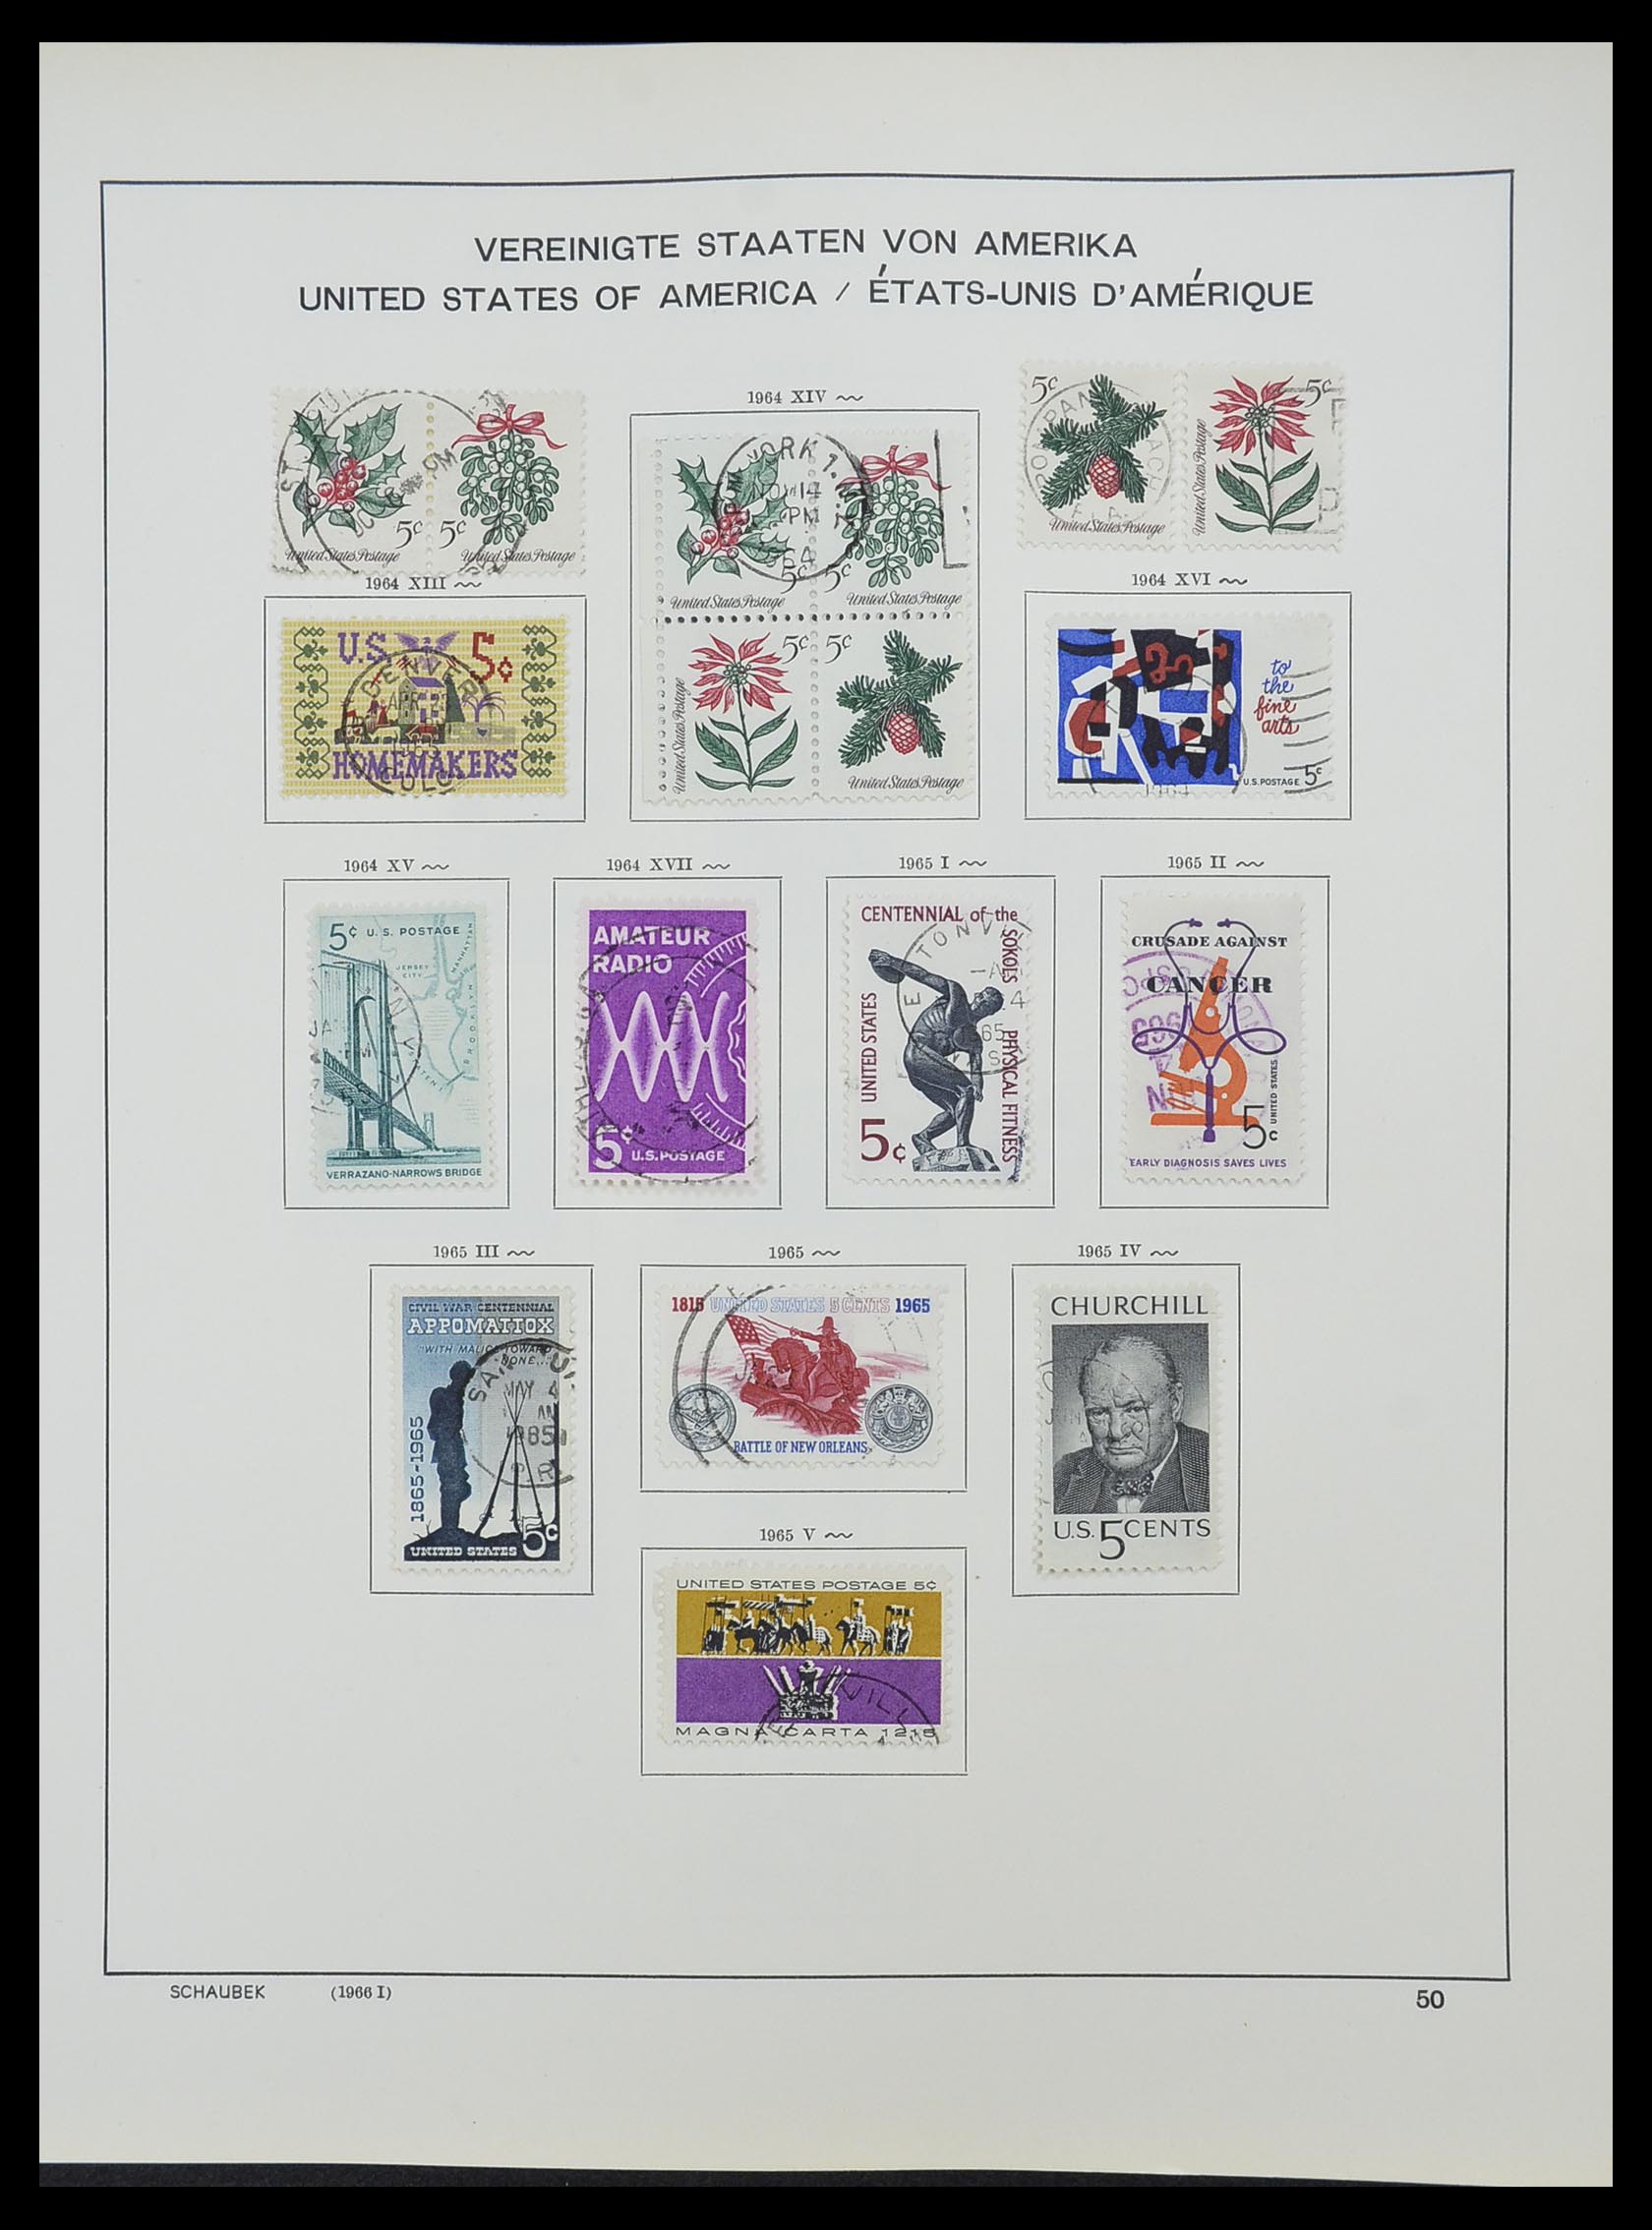 33211 083 - Stamp collection 33211 USA 1847-2010.